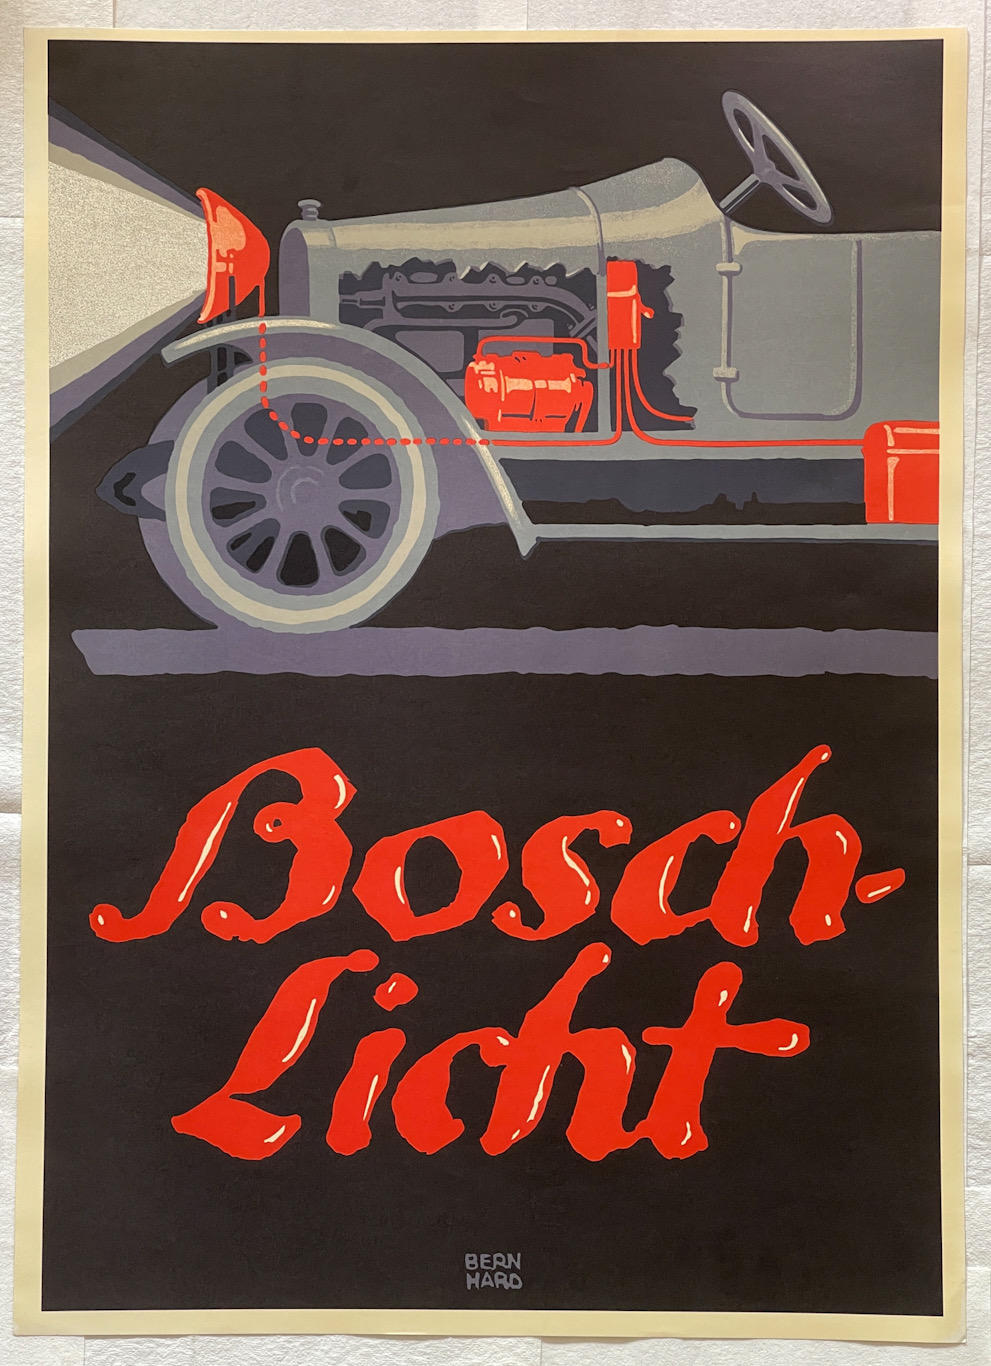 RARE!!! AUTHENTIC BOSCH / LUCIAN BERNHARD LITHOGRAPH WITH PRINTED DESCRIPTION BACKPLATE - “Bosch Licht (Bosch headlights)” - CIRCA 1913